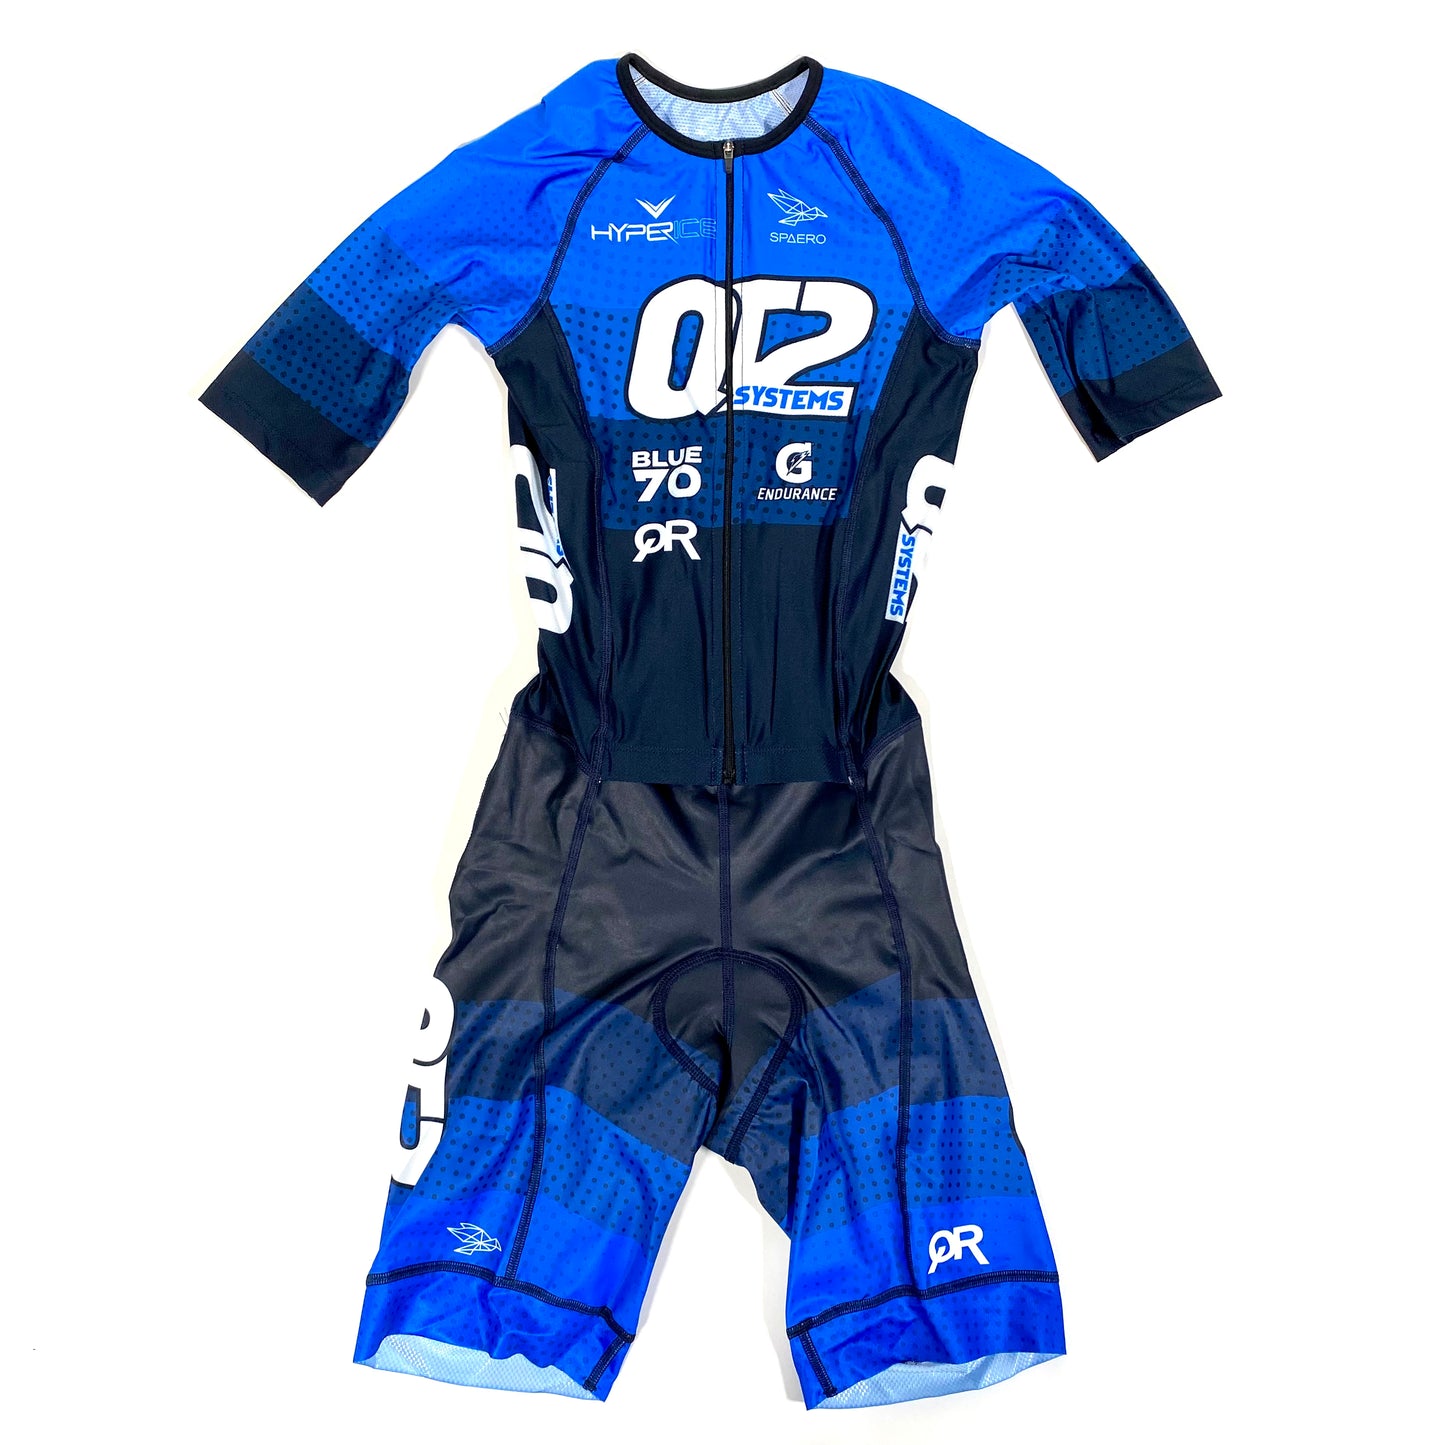 QT2 Mens 22 Triathlon Suit SP3 (Final Sale)